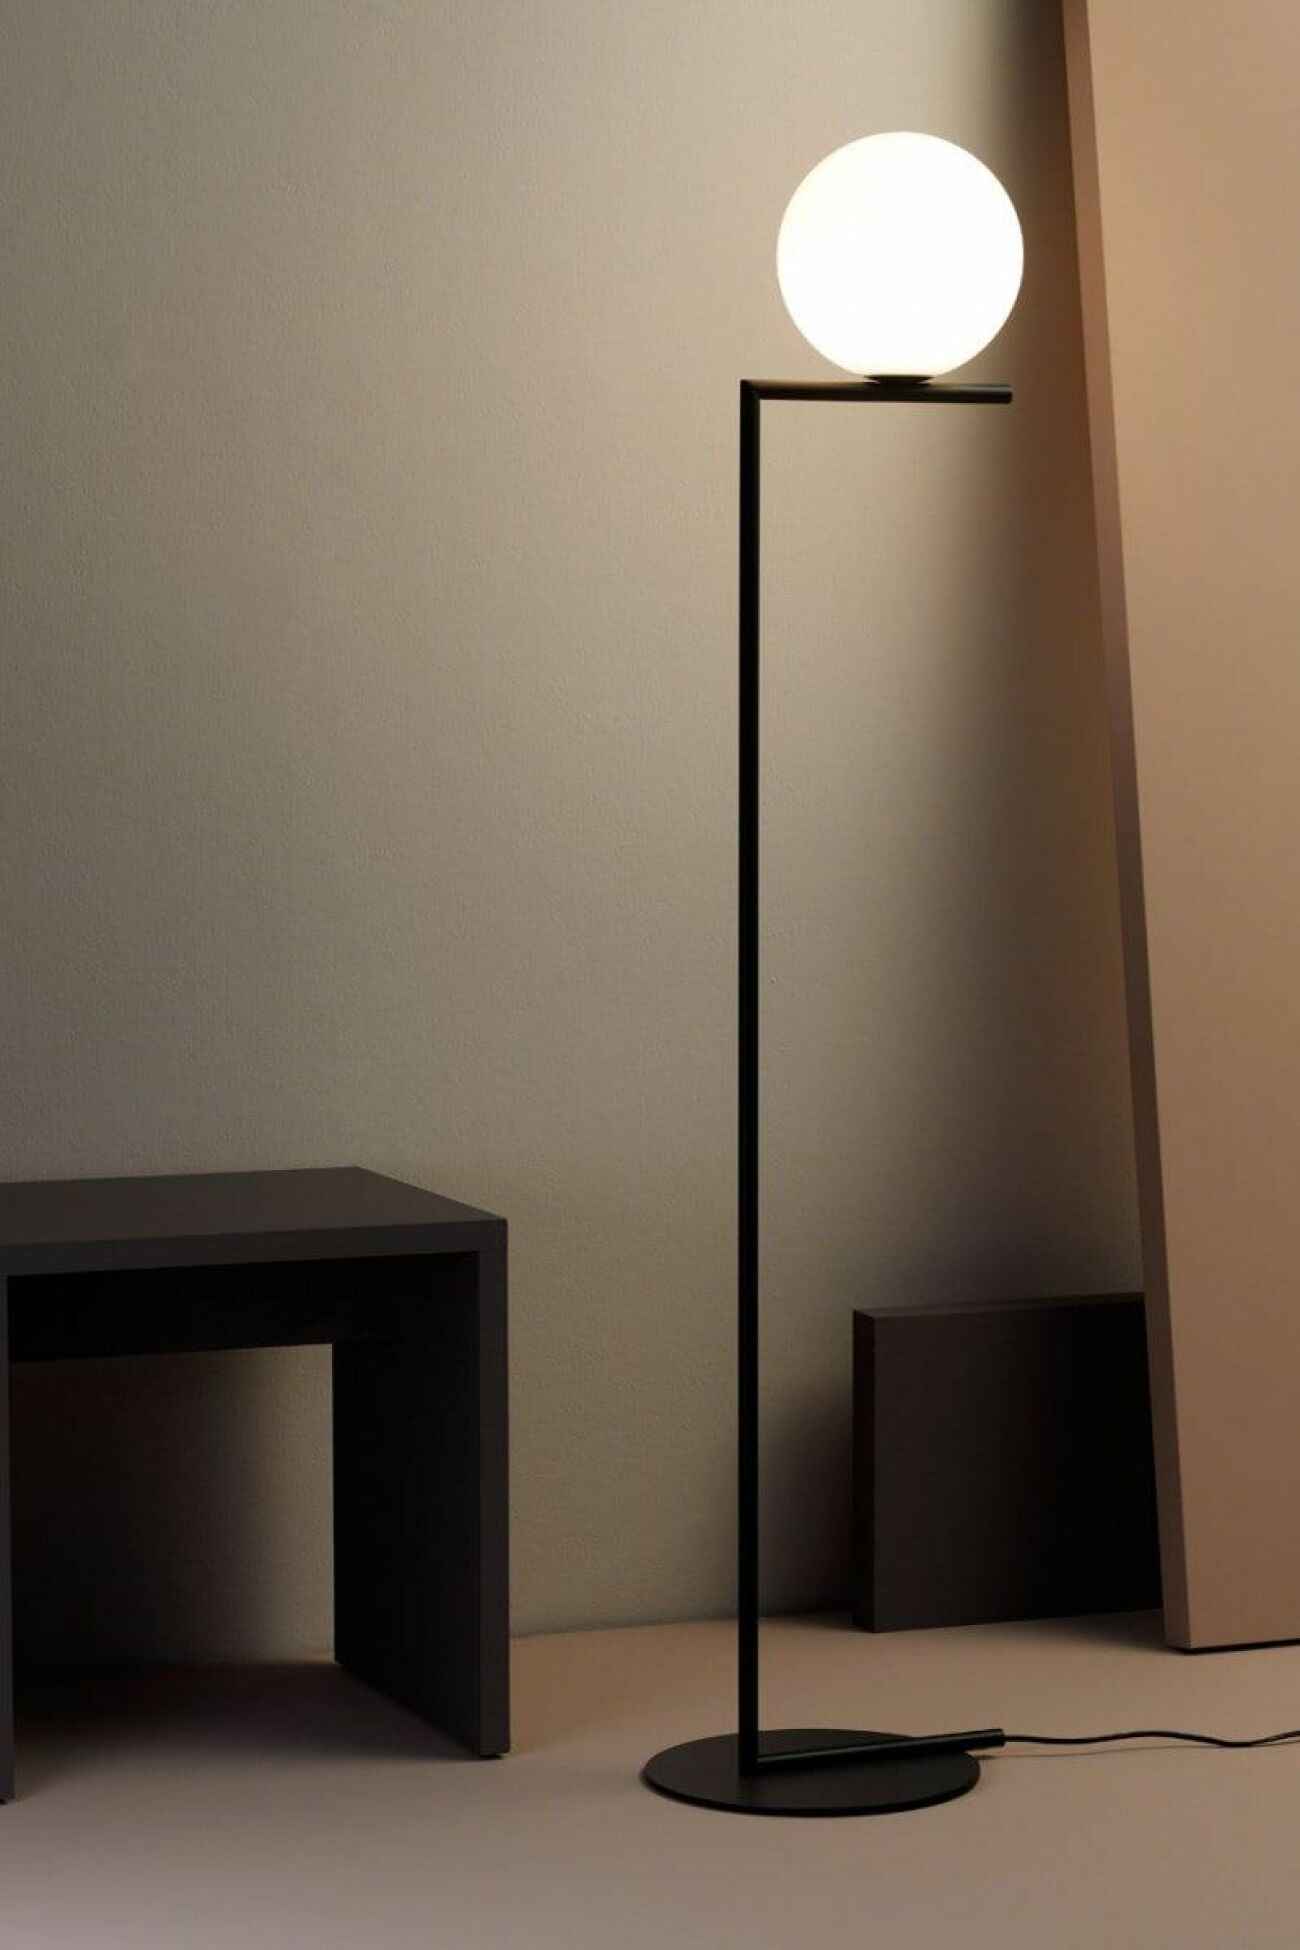 Golvlampan IC Lights från Flos är en stilsäker designklassiker